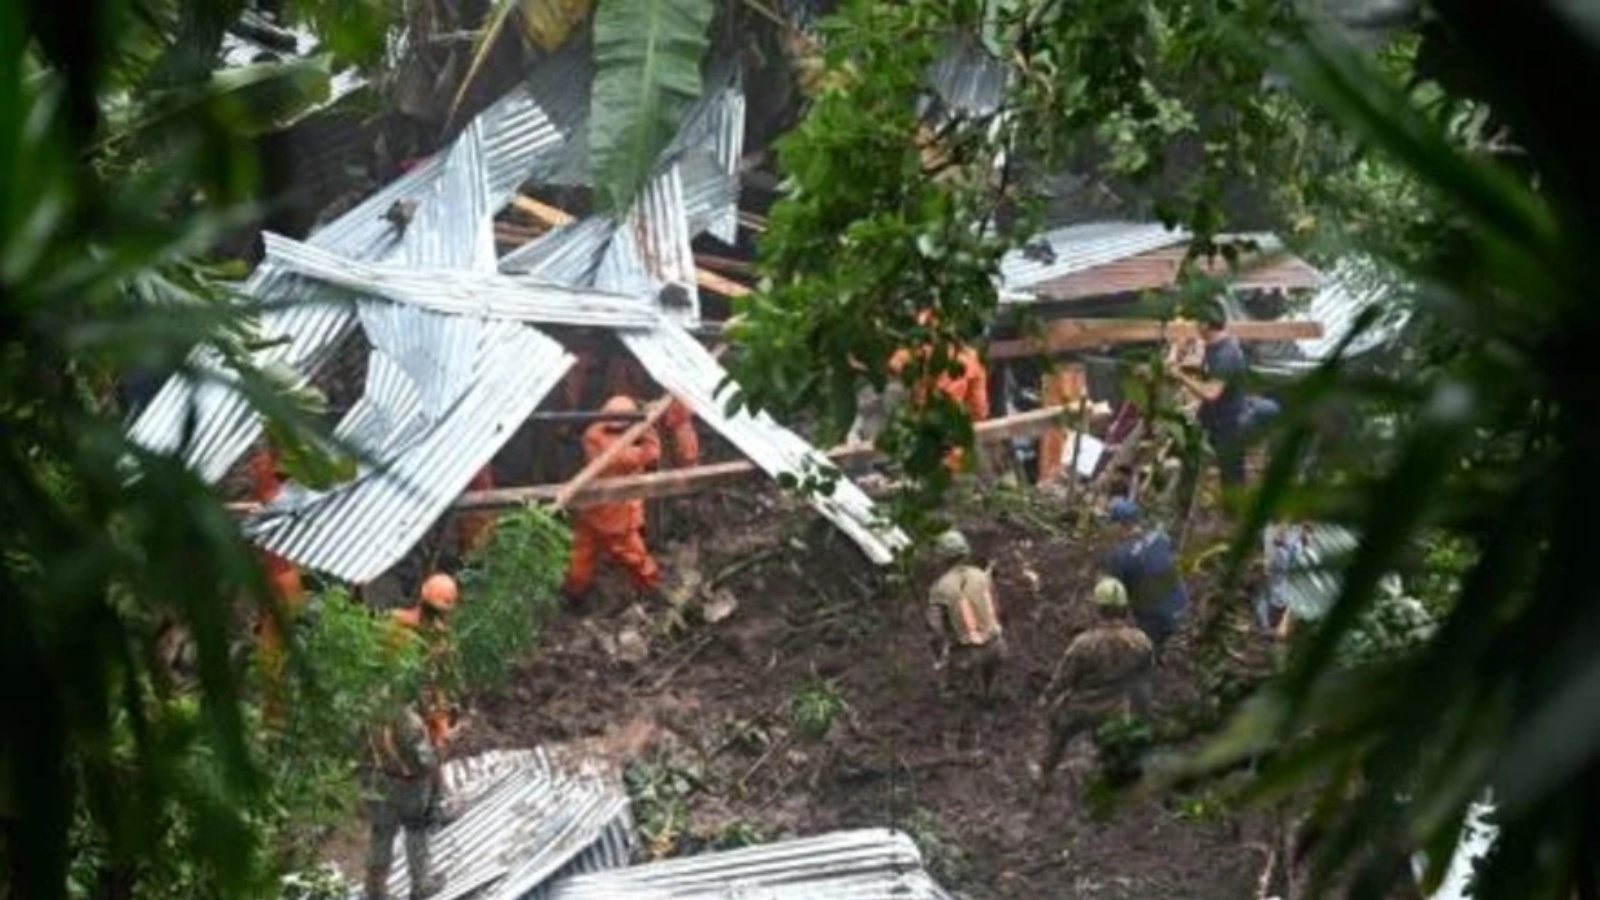  فرق إنقاذ تبحث عن ضحايا انهيار أرضي في قرية هويزوكار الواقعة على بعد 16 كلم جنوب غرب العاصمة سان سلفادور